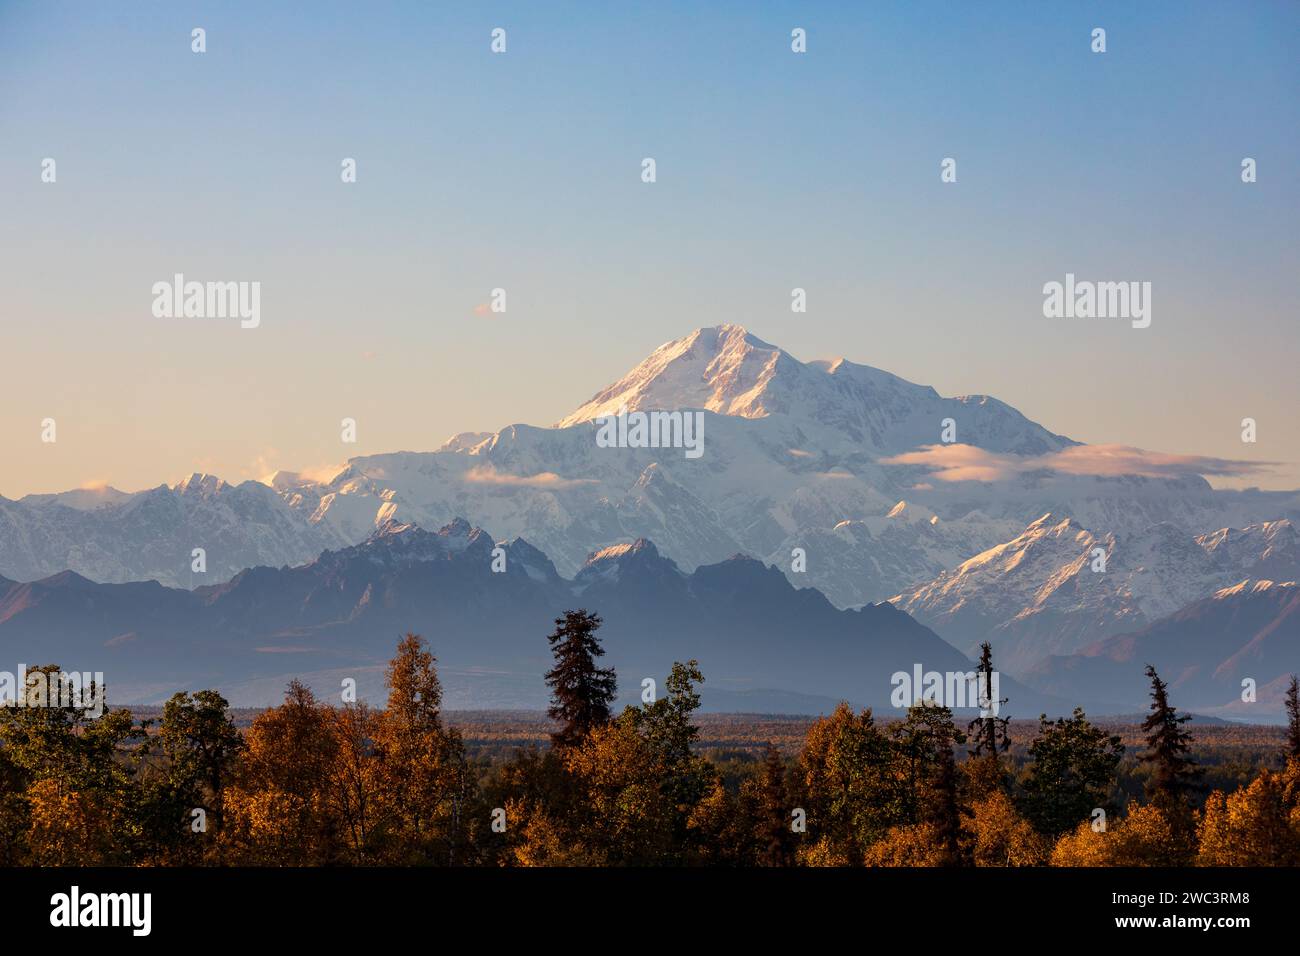 Lumière crépusculaire sur la chaîne montagneuse enneigée de l'Alaska avec des arbres forestiers aux couleurs d'automne au premier plan Banque D'Images